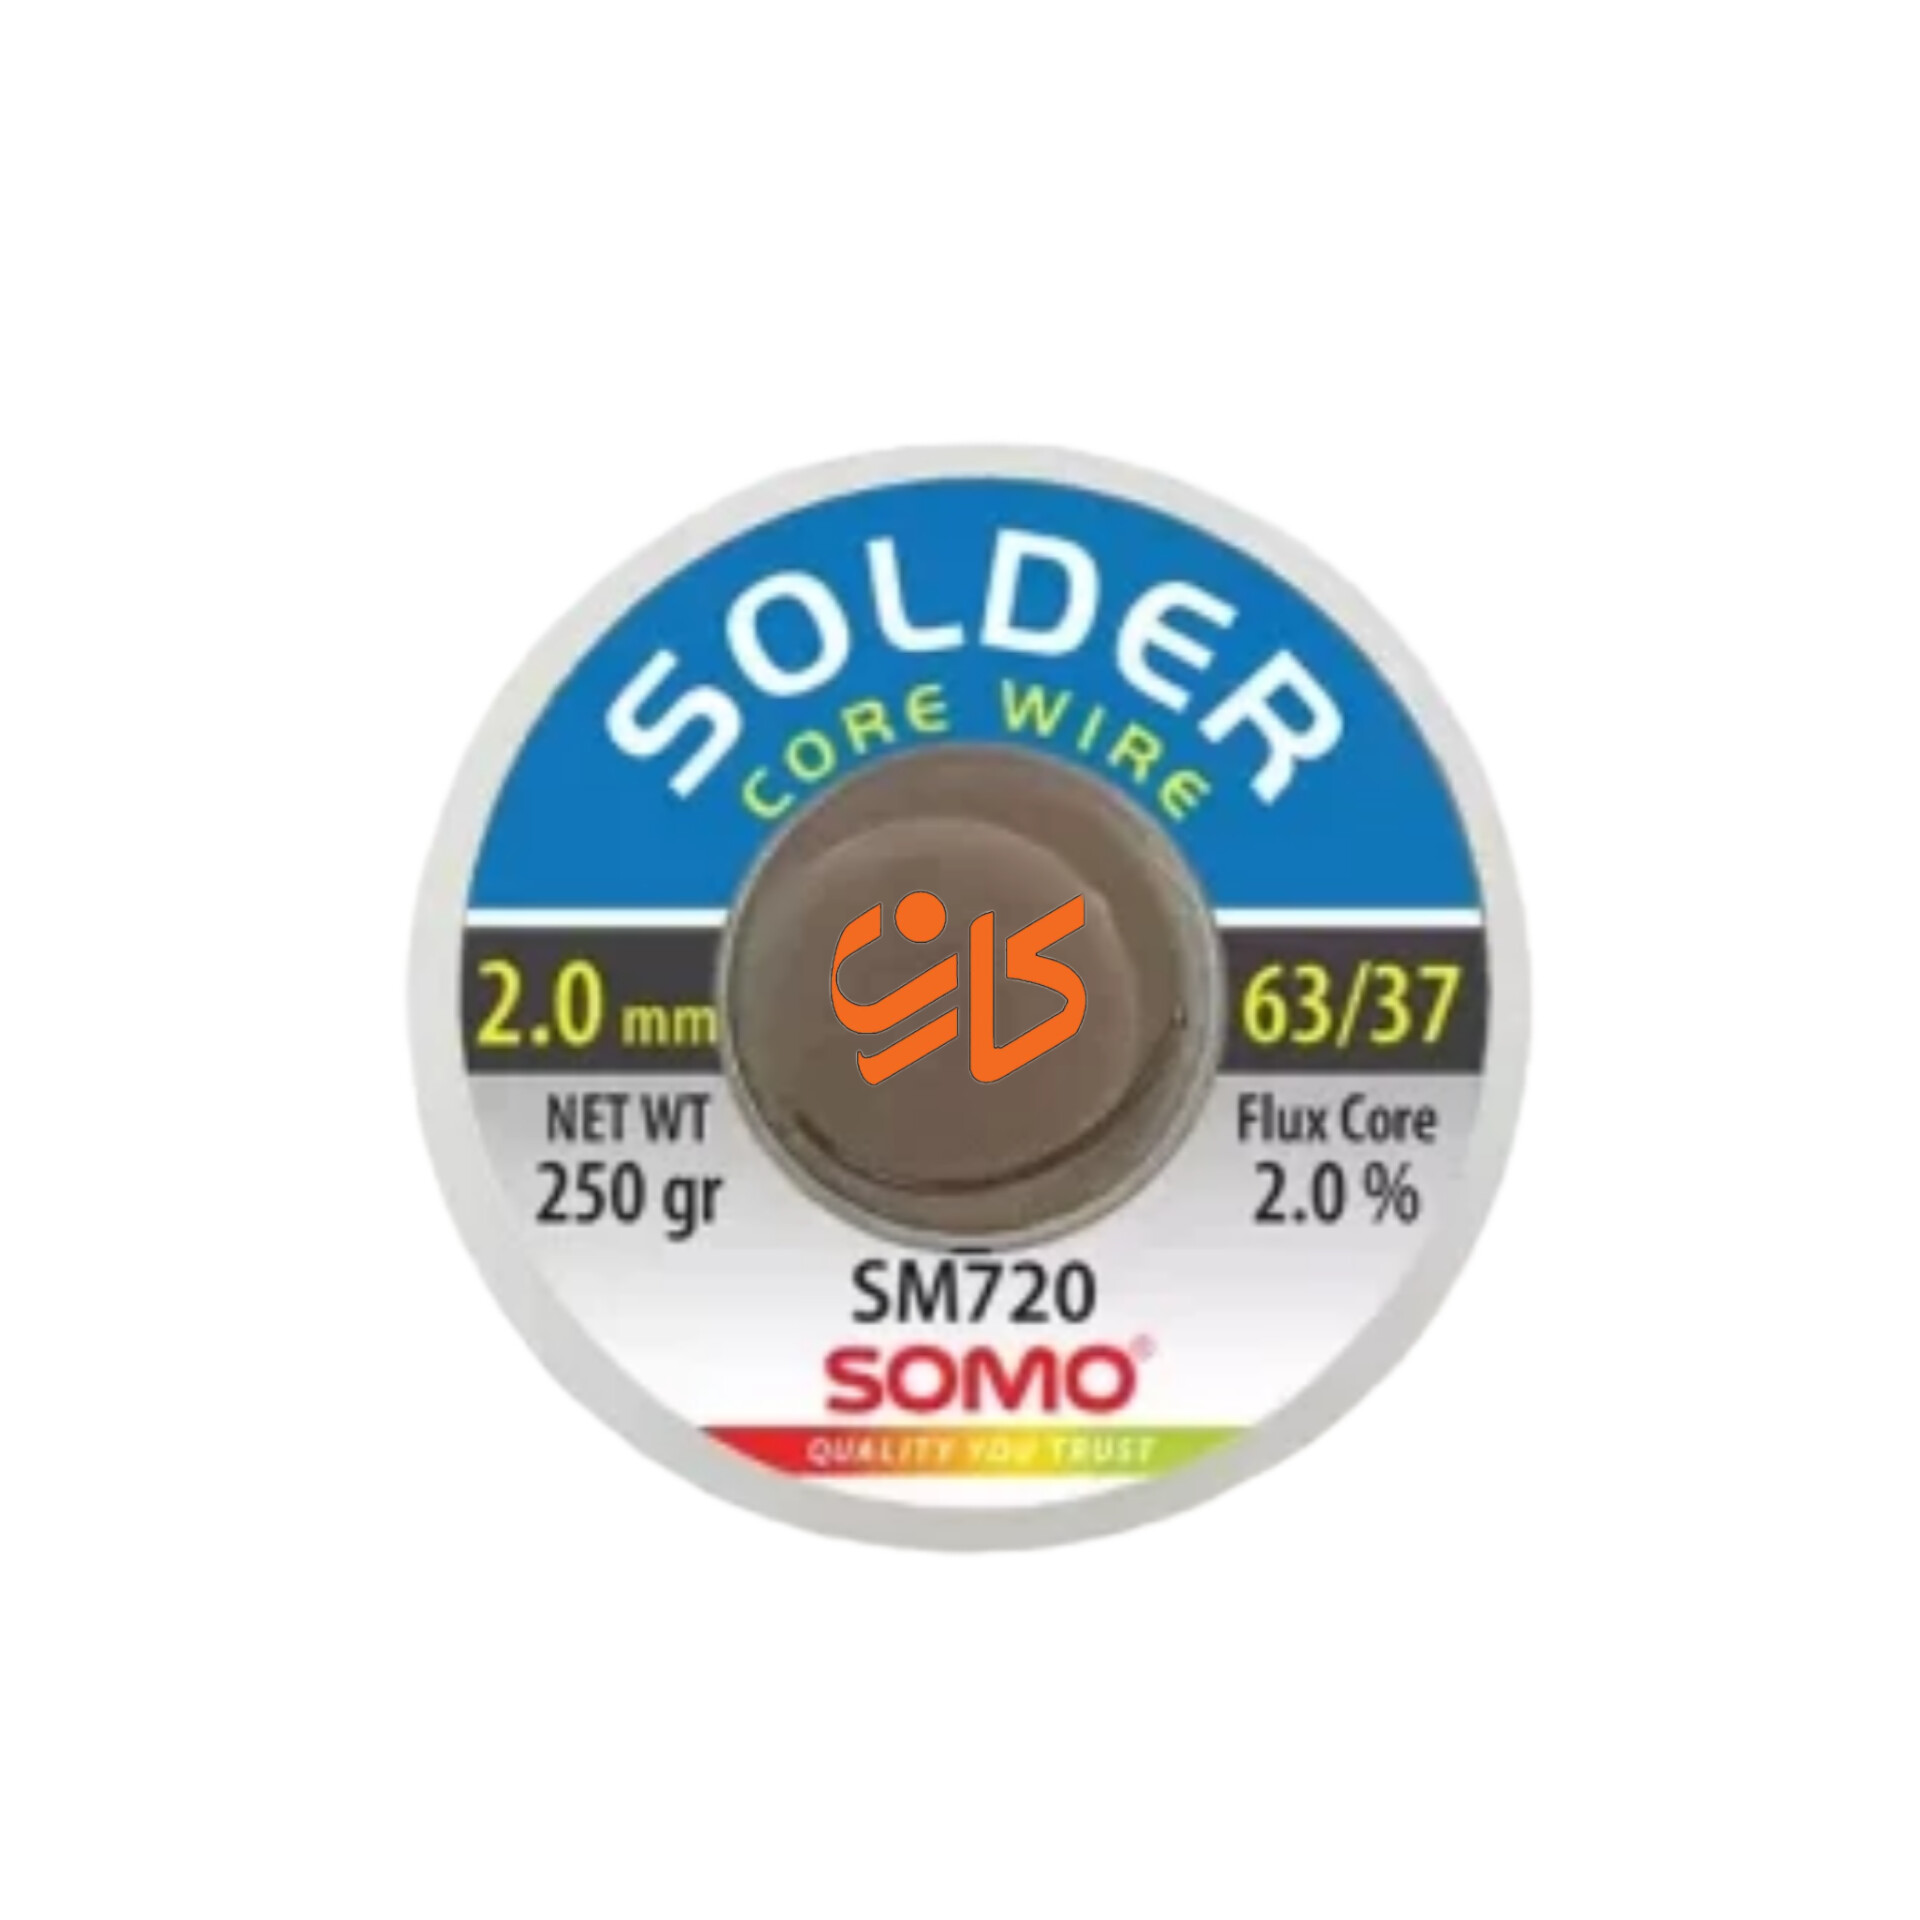 سیم لحیم سومو 2 میلیمتر 250 گرم مدل SOMO SM720